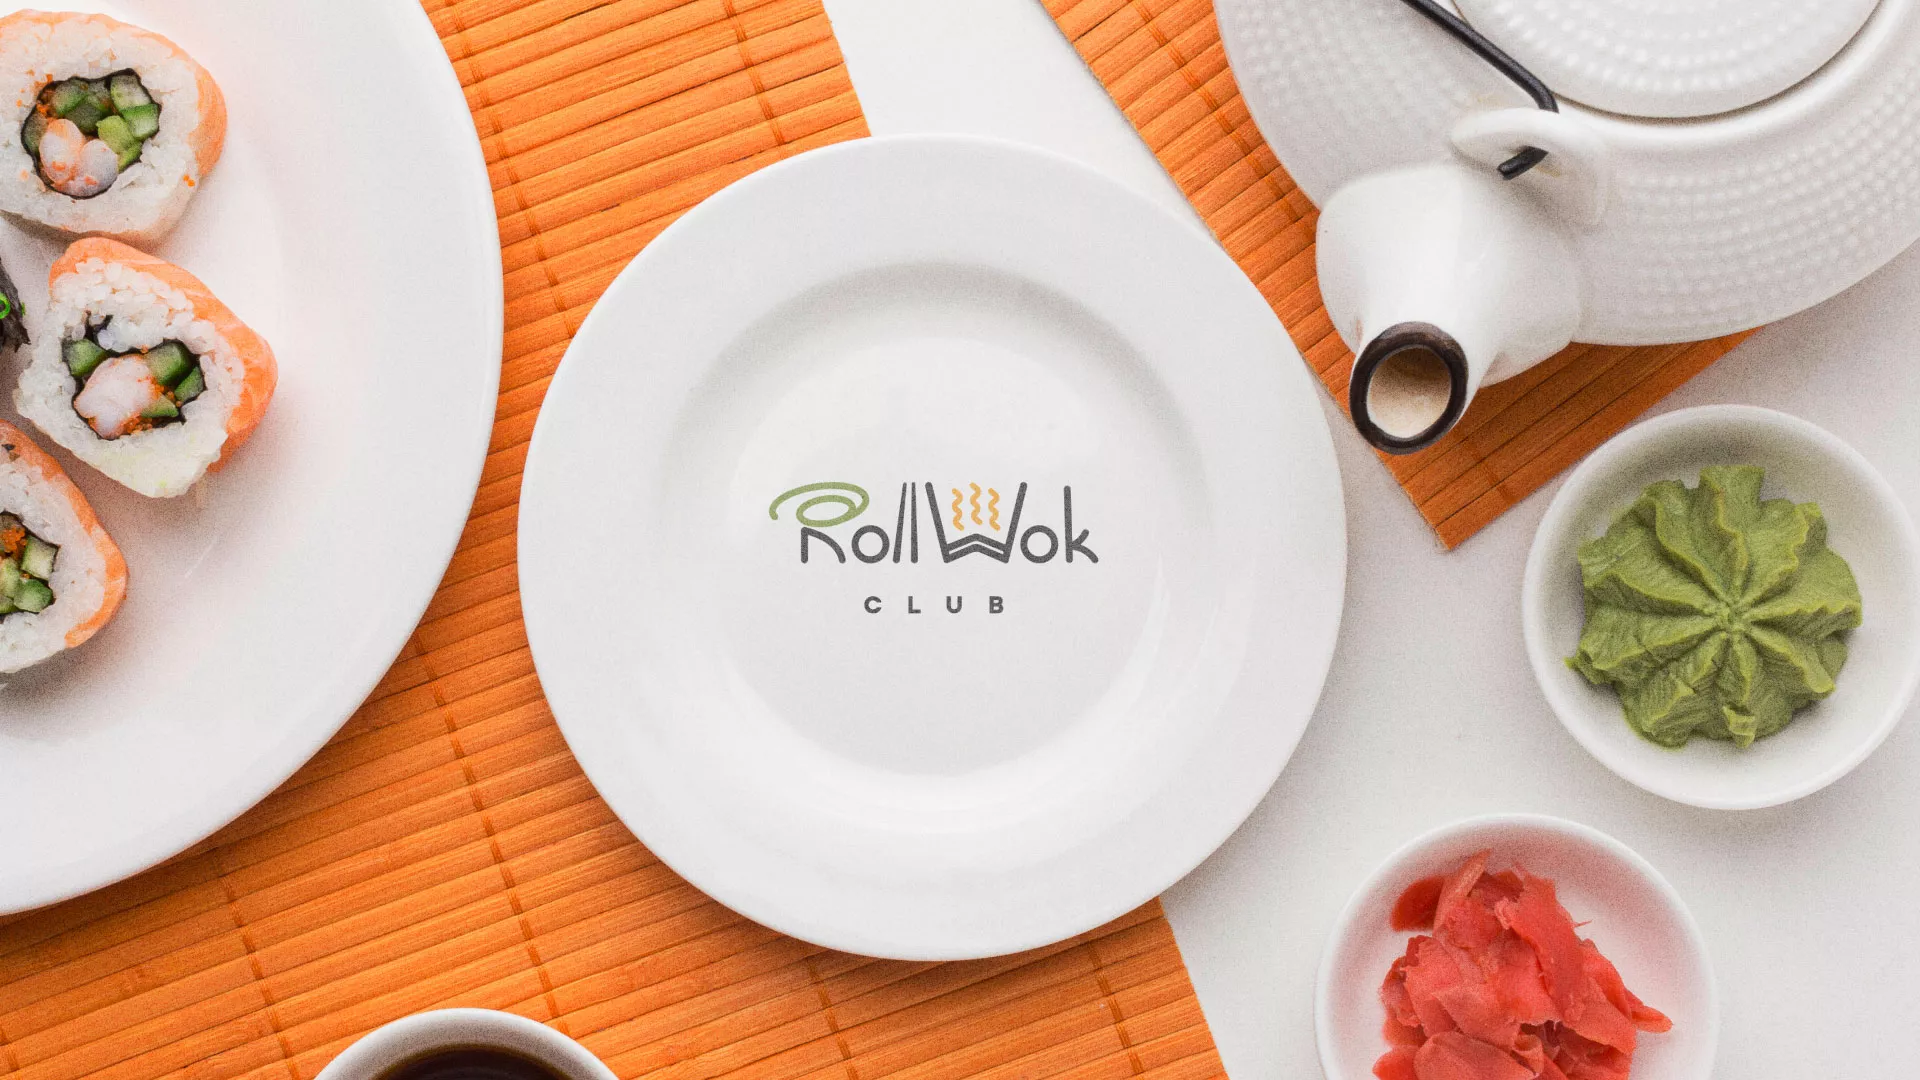 Разработка логотипа и фирменного стиля суши-бара «Roll Wok Club» в Острогожске